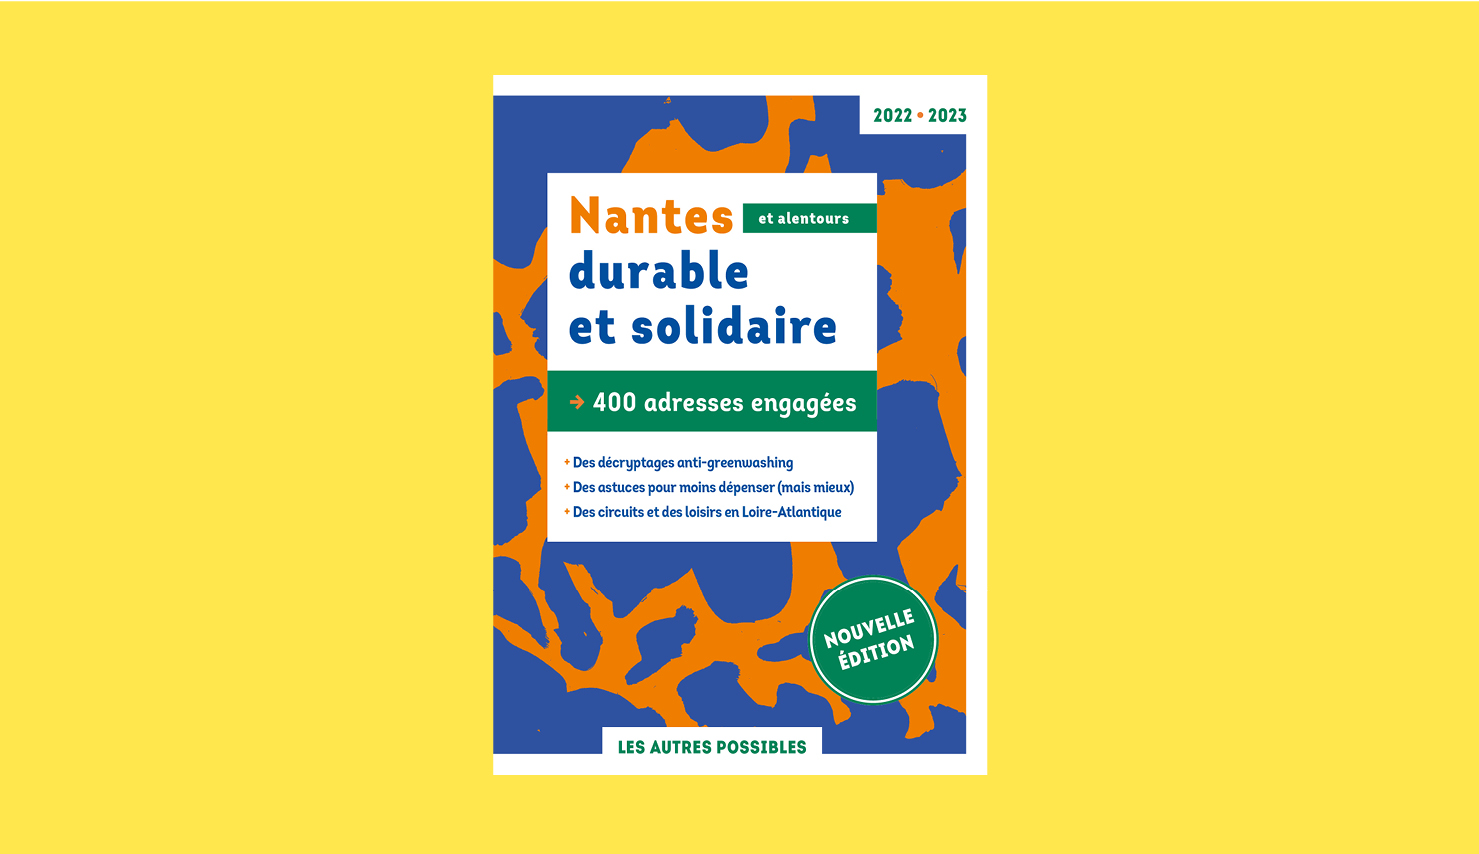 Soutenez la parution du prochain "Nantes durable et solidaire"